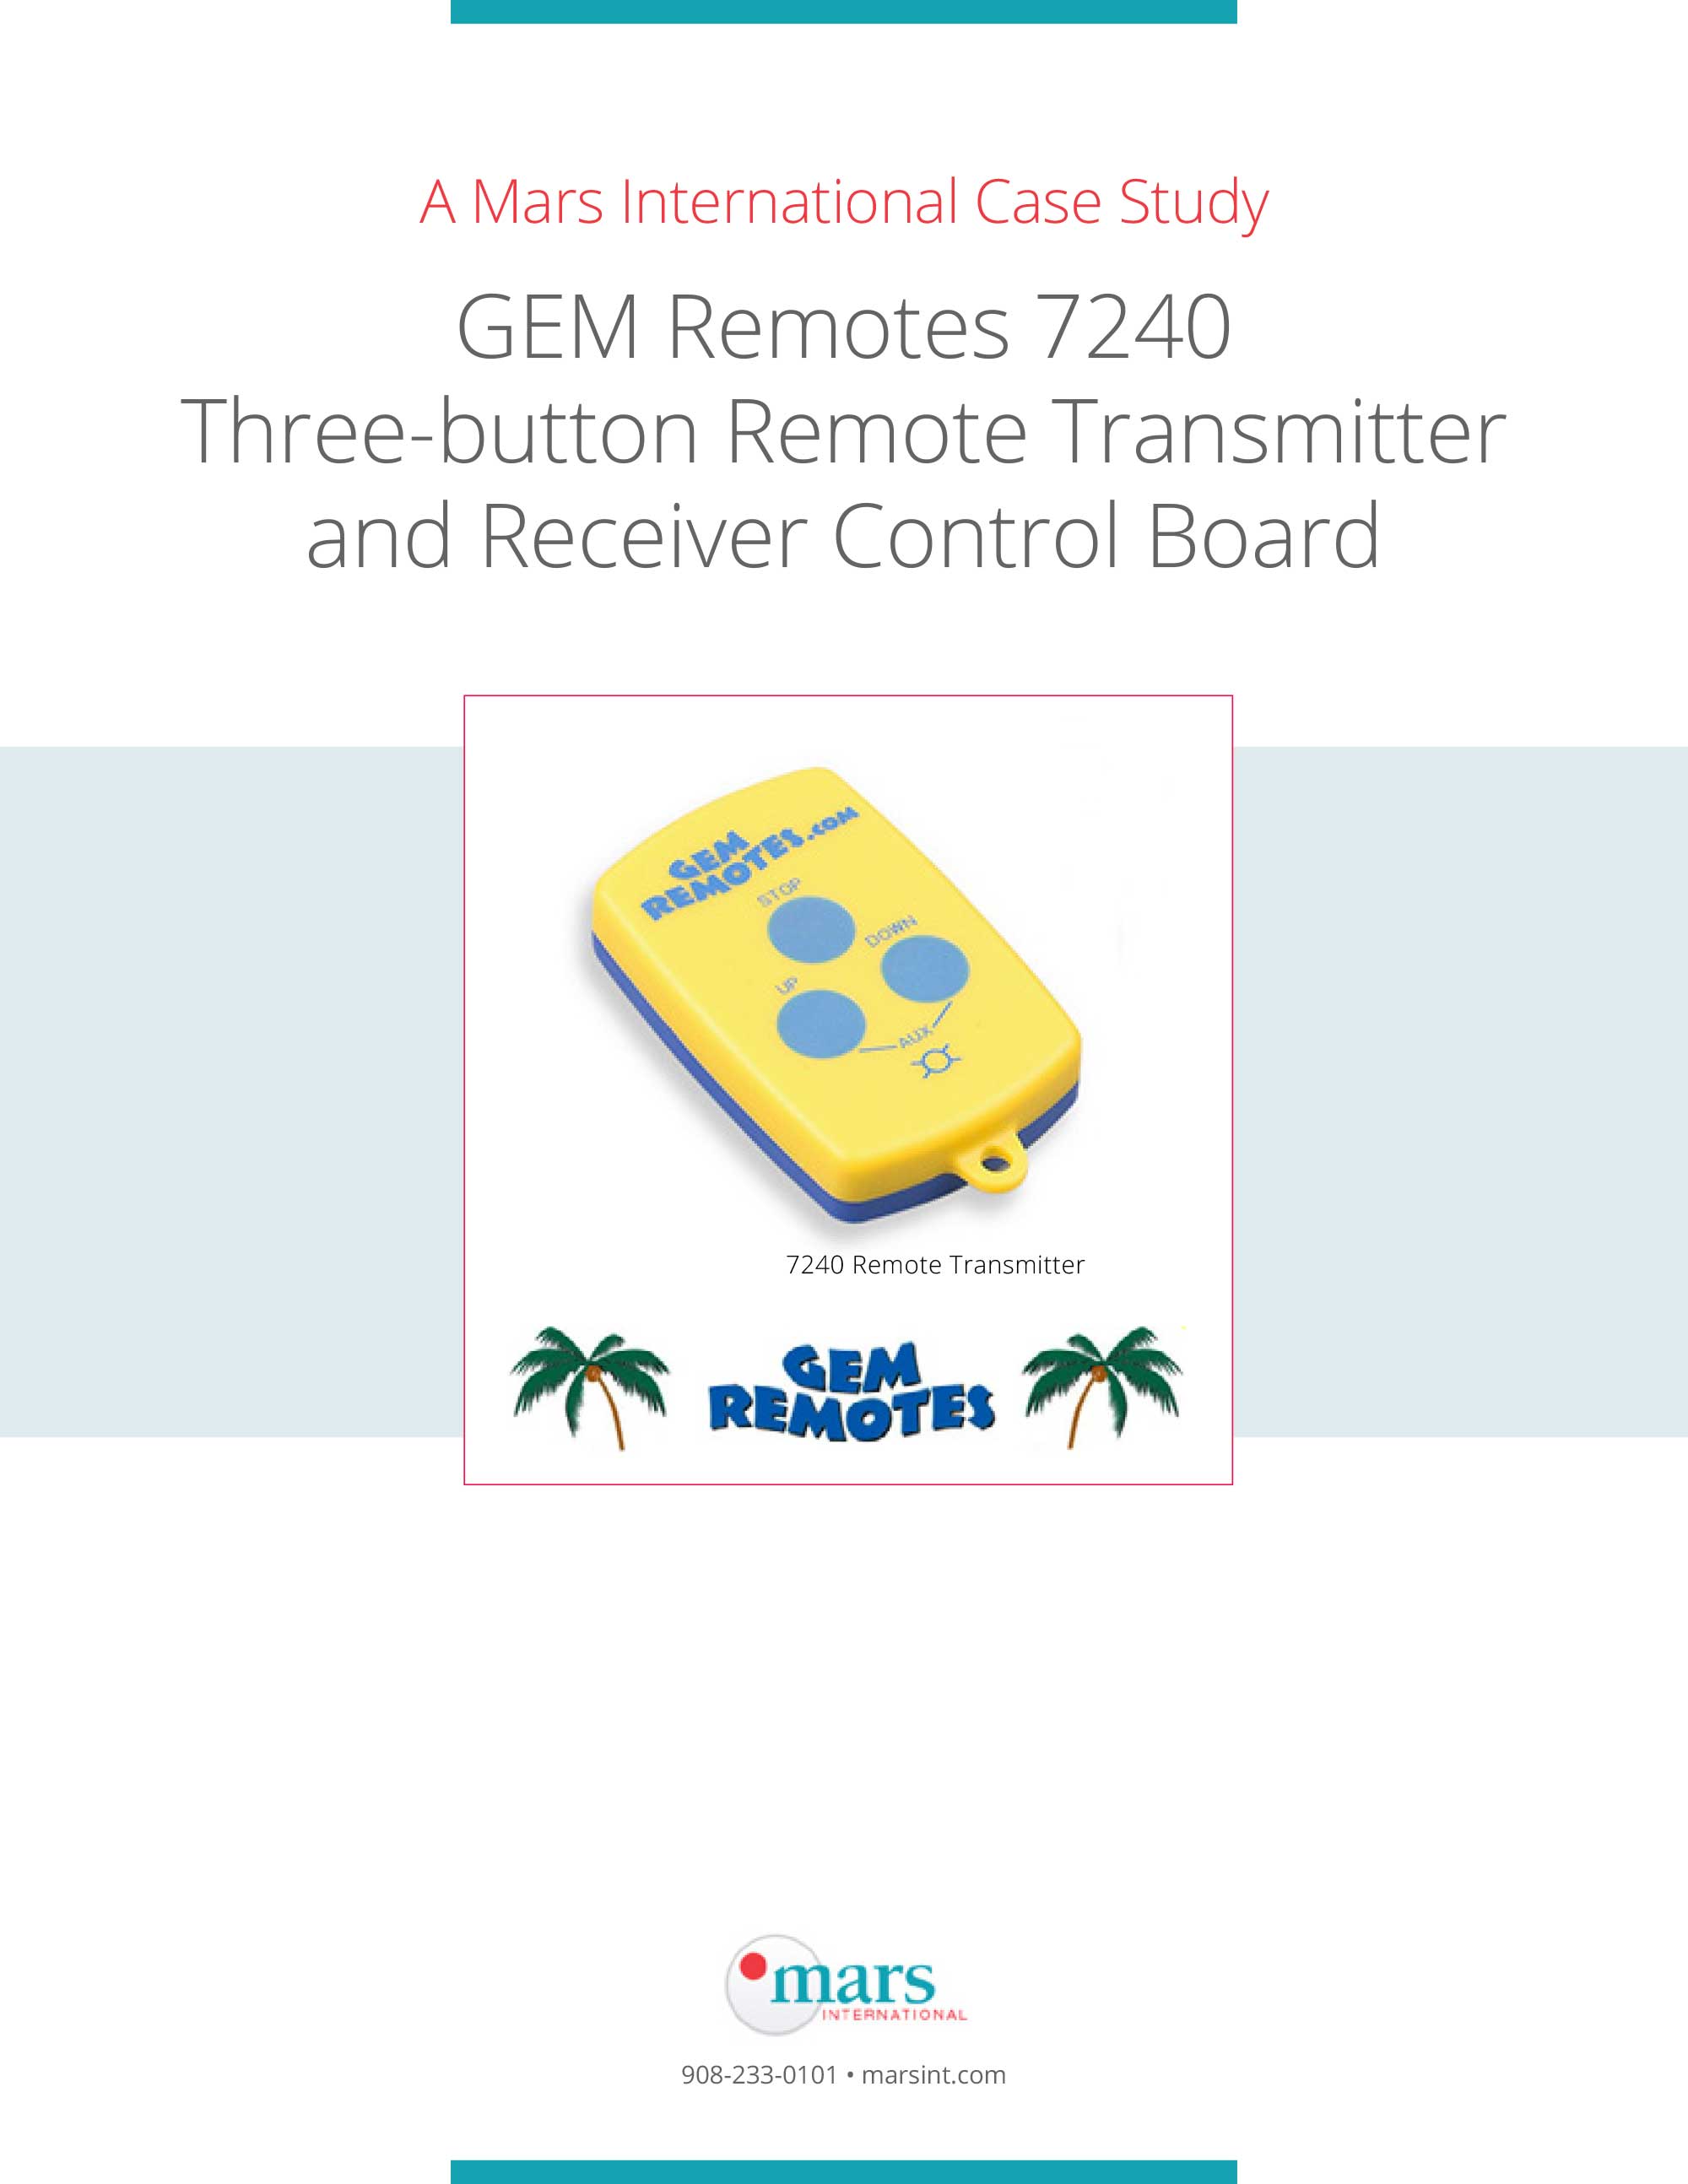 GEM_7240_3Button_Remote_Transmit_Receive_ControlBoard-1.jpg